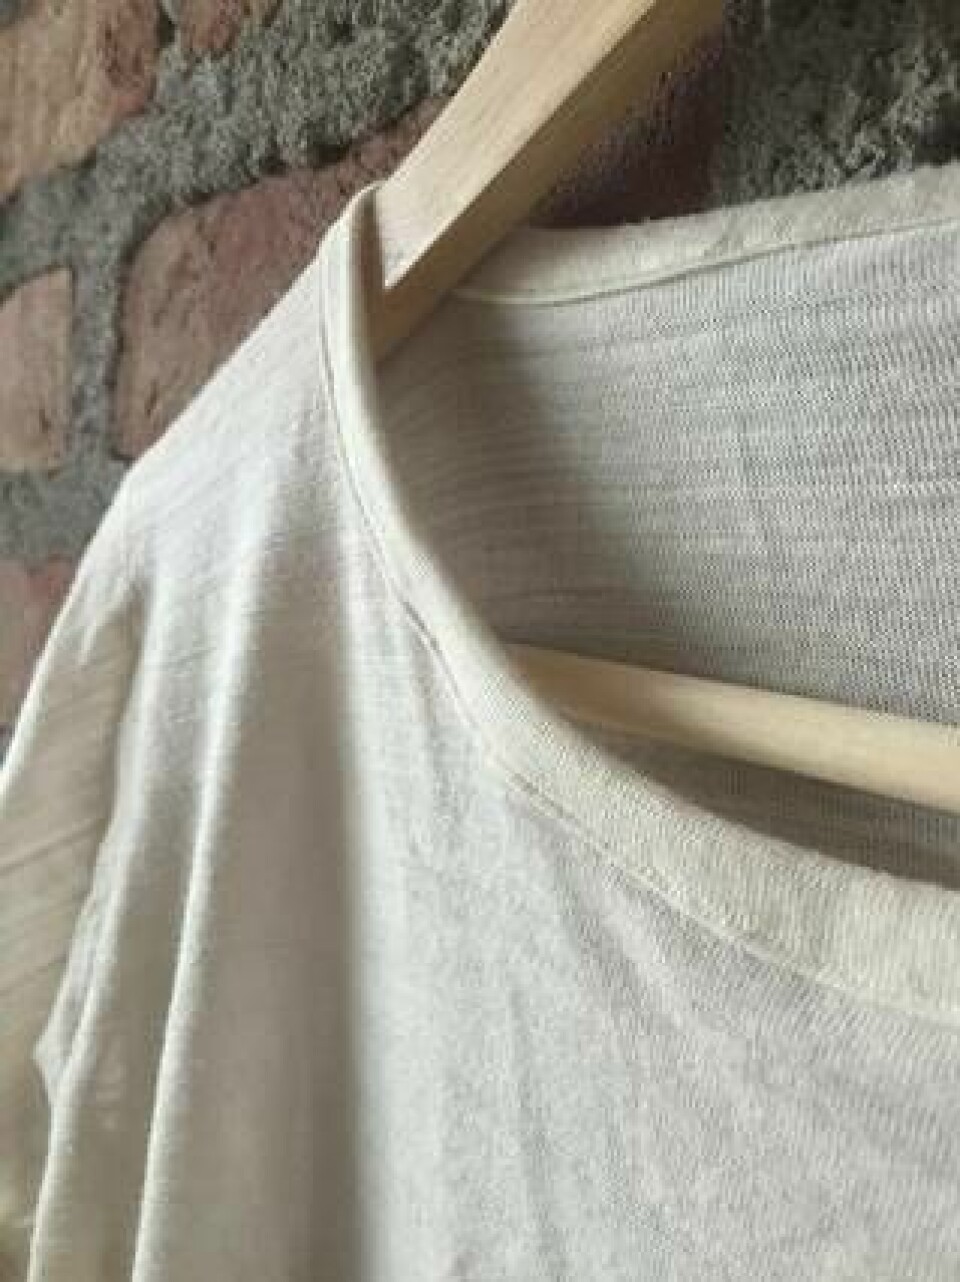 Vit tröja tillverkad av Renewcells textilmassa, som har spunnits till ny tråd och sedan stickats. Ett projekt från Högskolan i Borås. Bomullsråvaran kom från gamla jeans. Foto: Renewcell